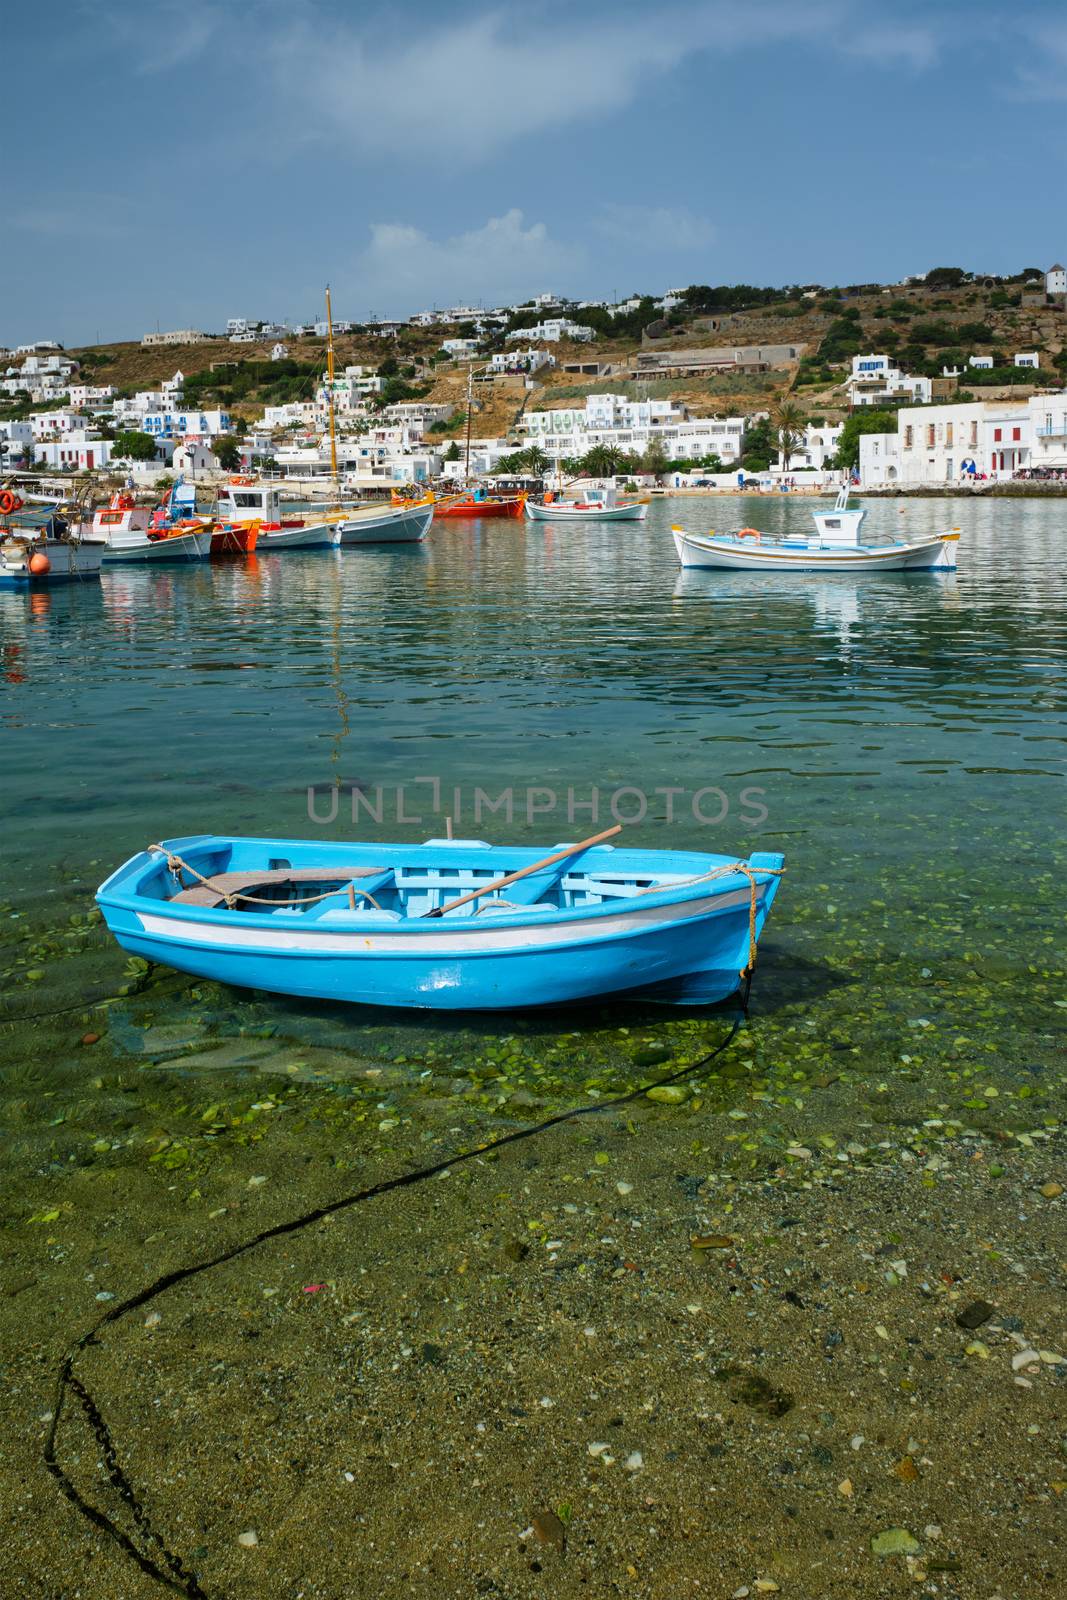 Greek fishing boat in port of Mykonos by dimol